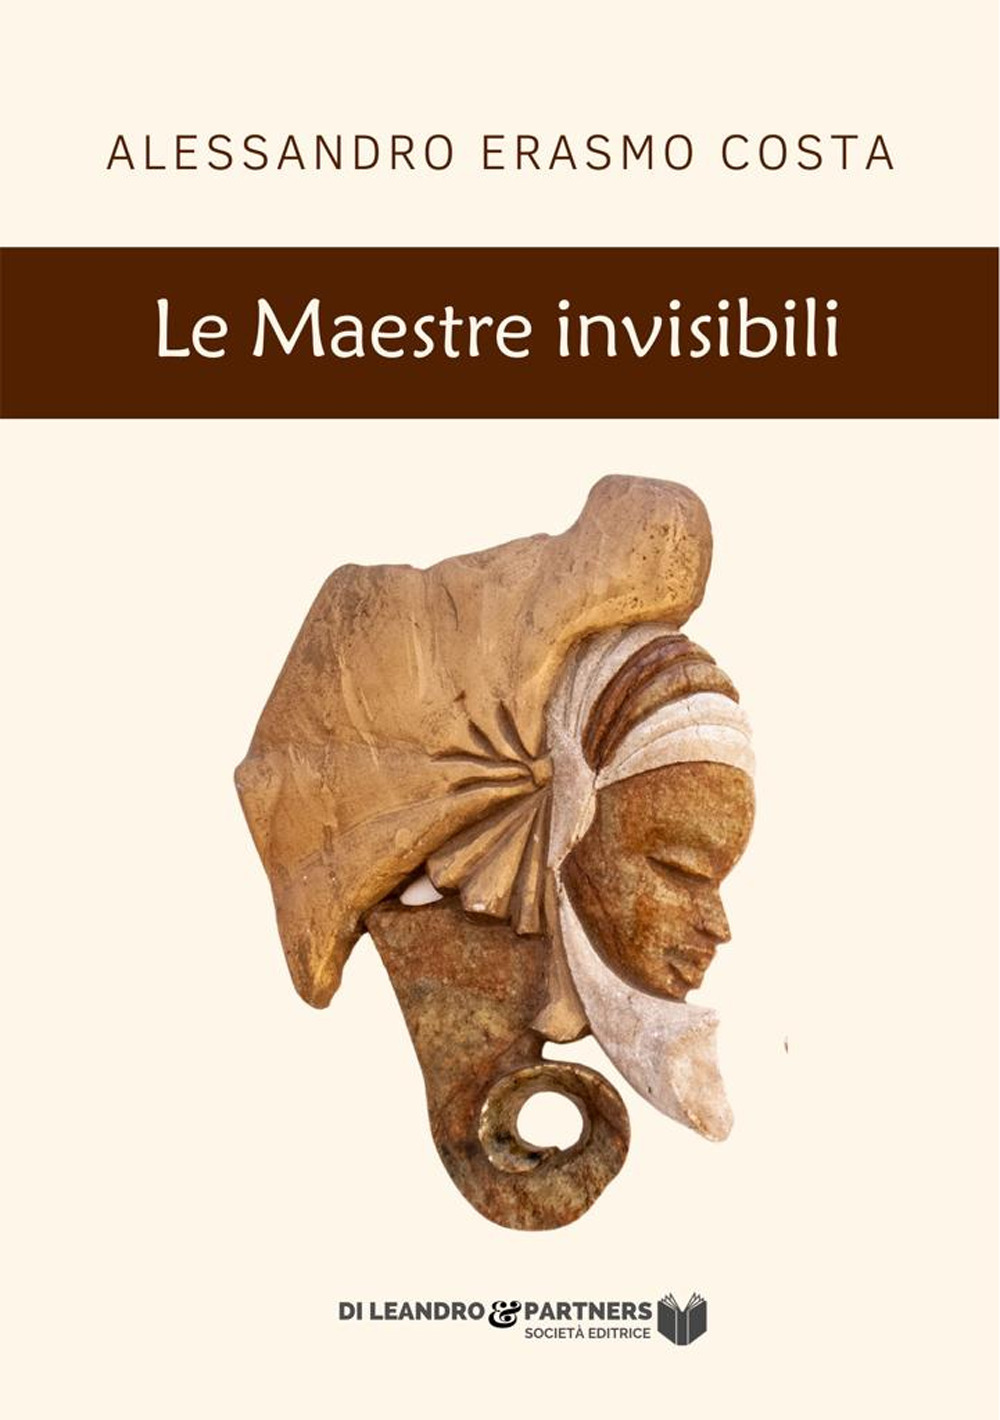 Libri Costa Alessandro Erasmo - Le Maestre Invisibili NUOVO SIGILLATO, EDIZIONE DEL 16/12/2021 SUBITO DISPONIBILE